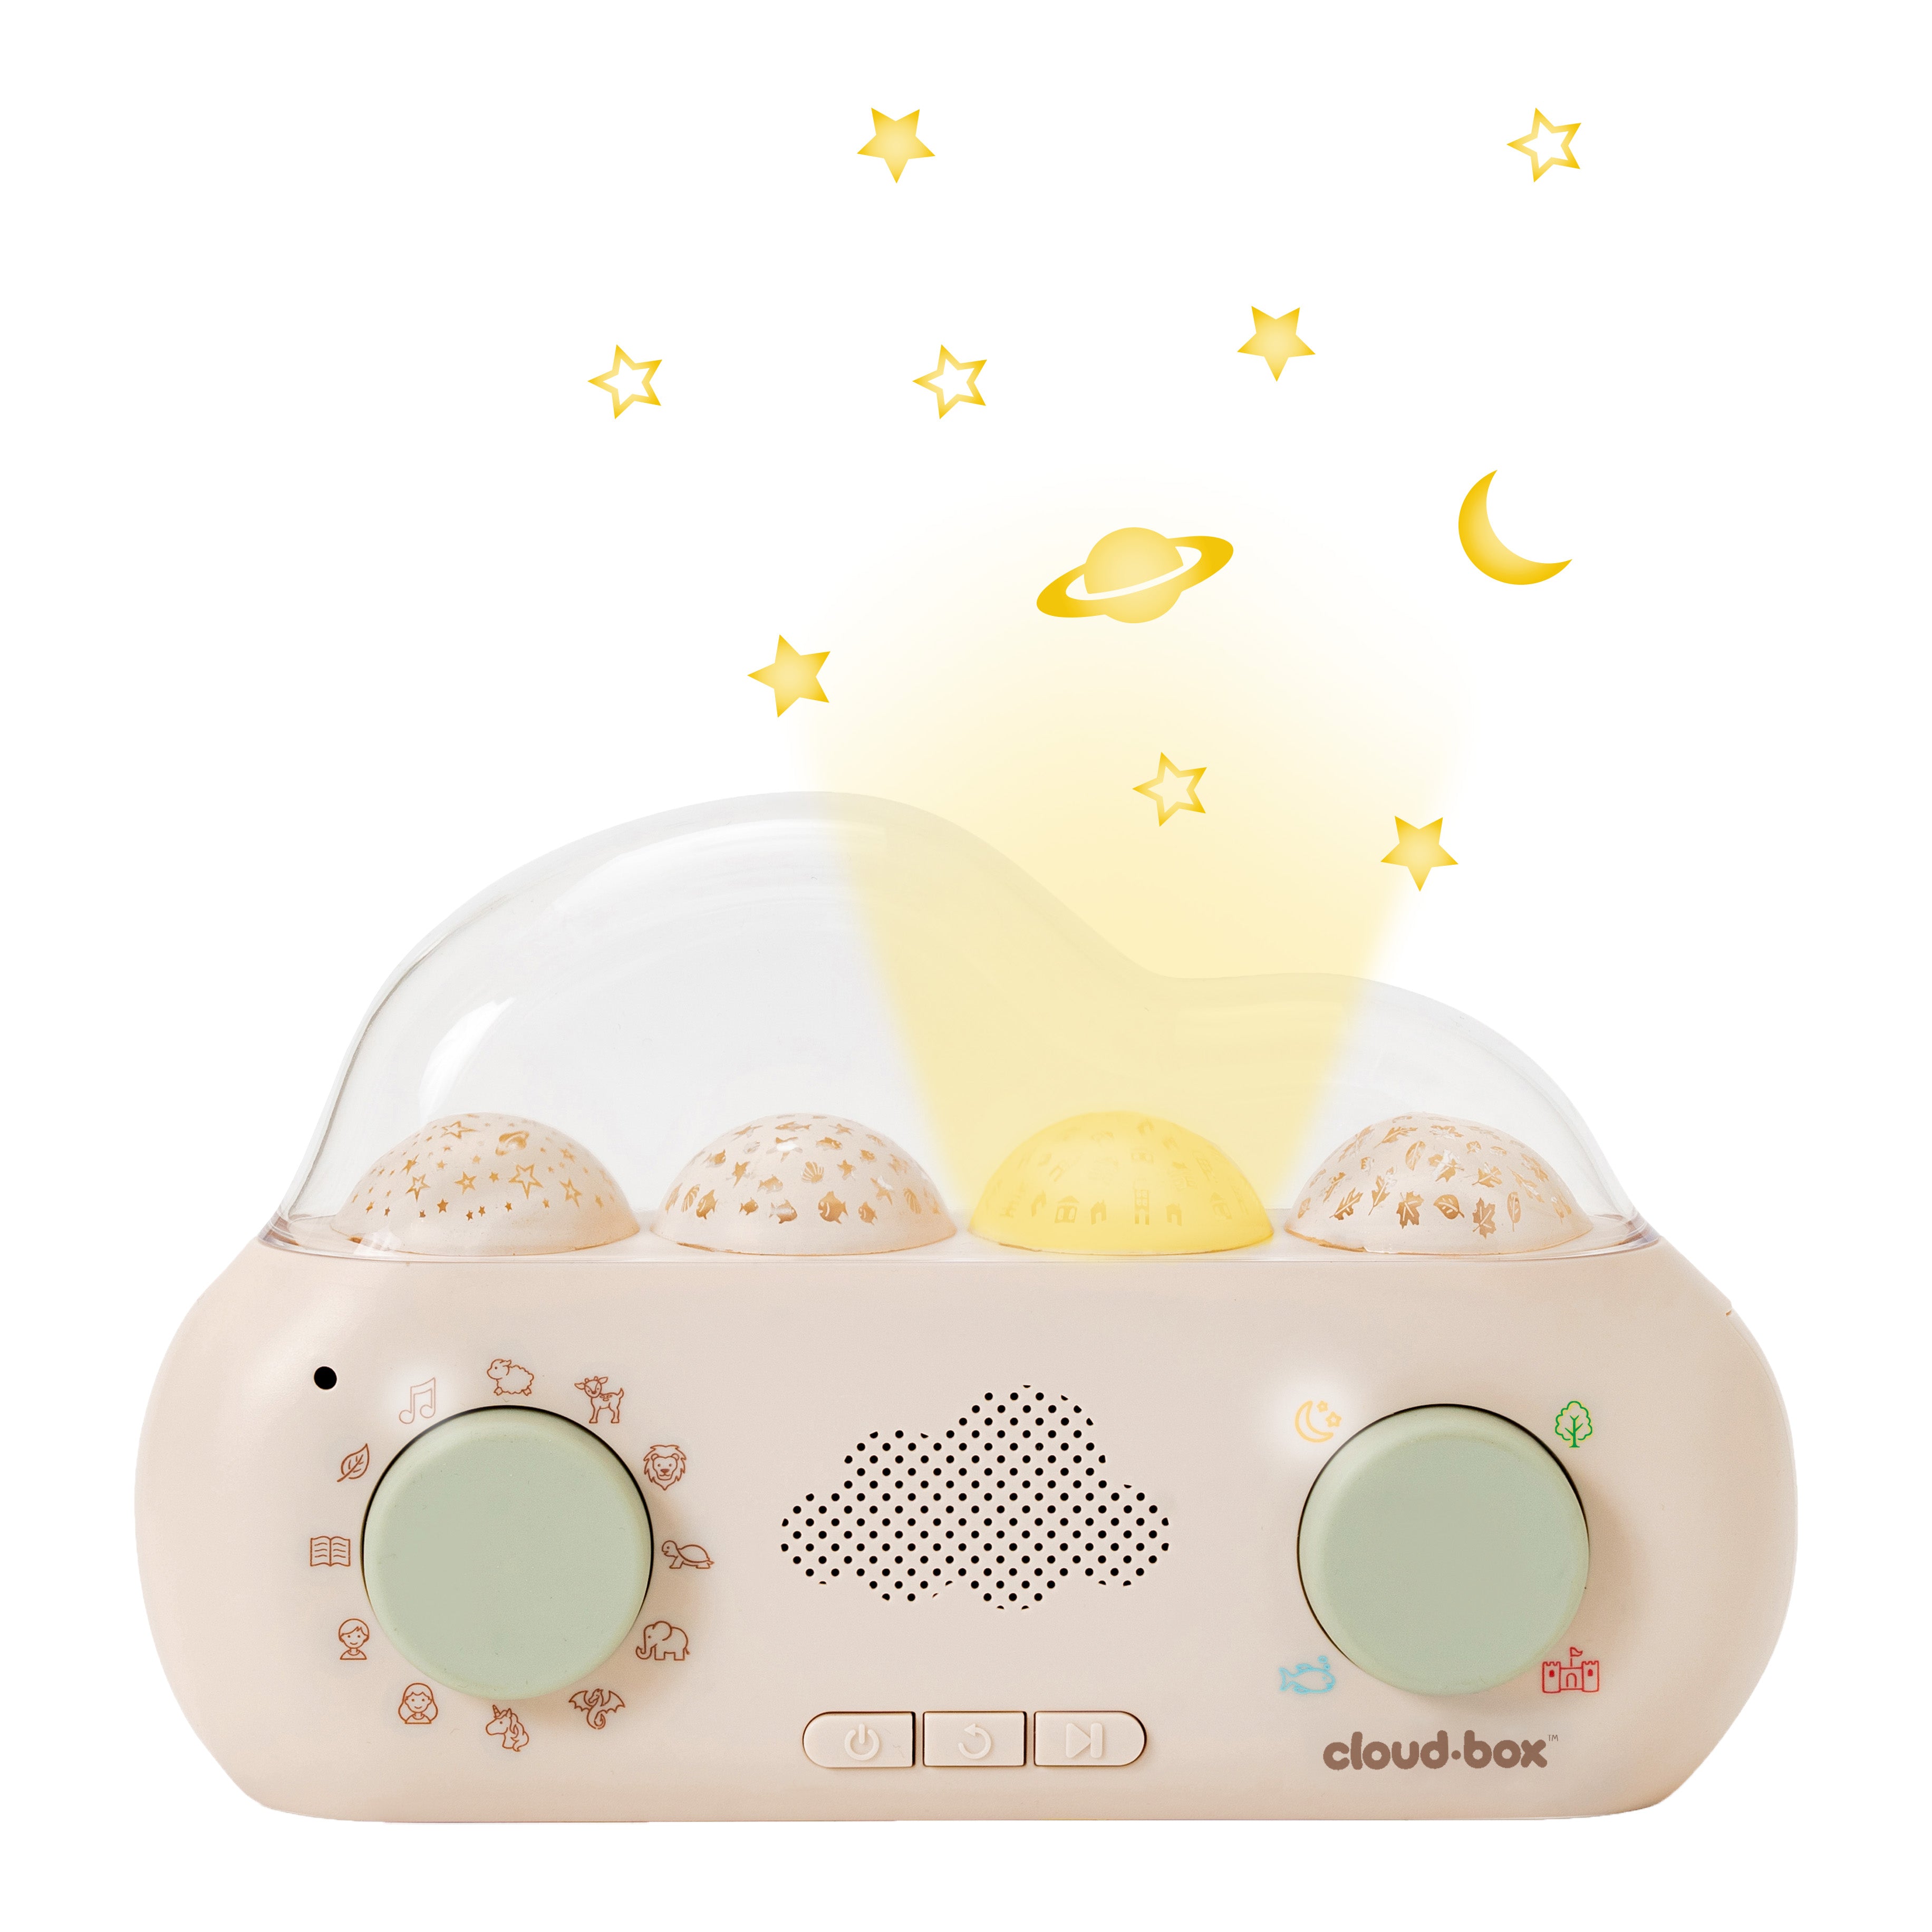 Cloud-Box-hörspielbox-Lichtprojektor-cloud-b-berlindleuxe-planeten-licht-lautsprecher